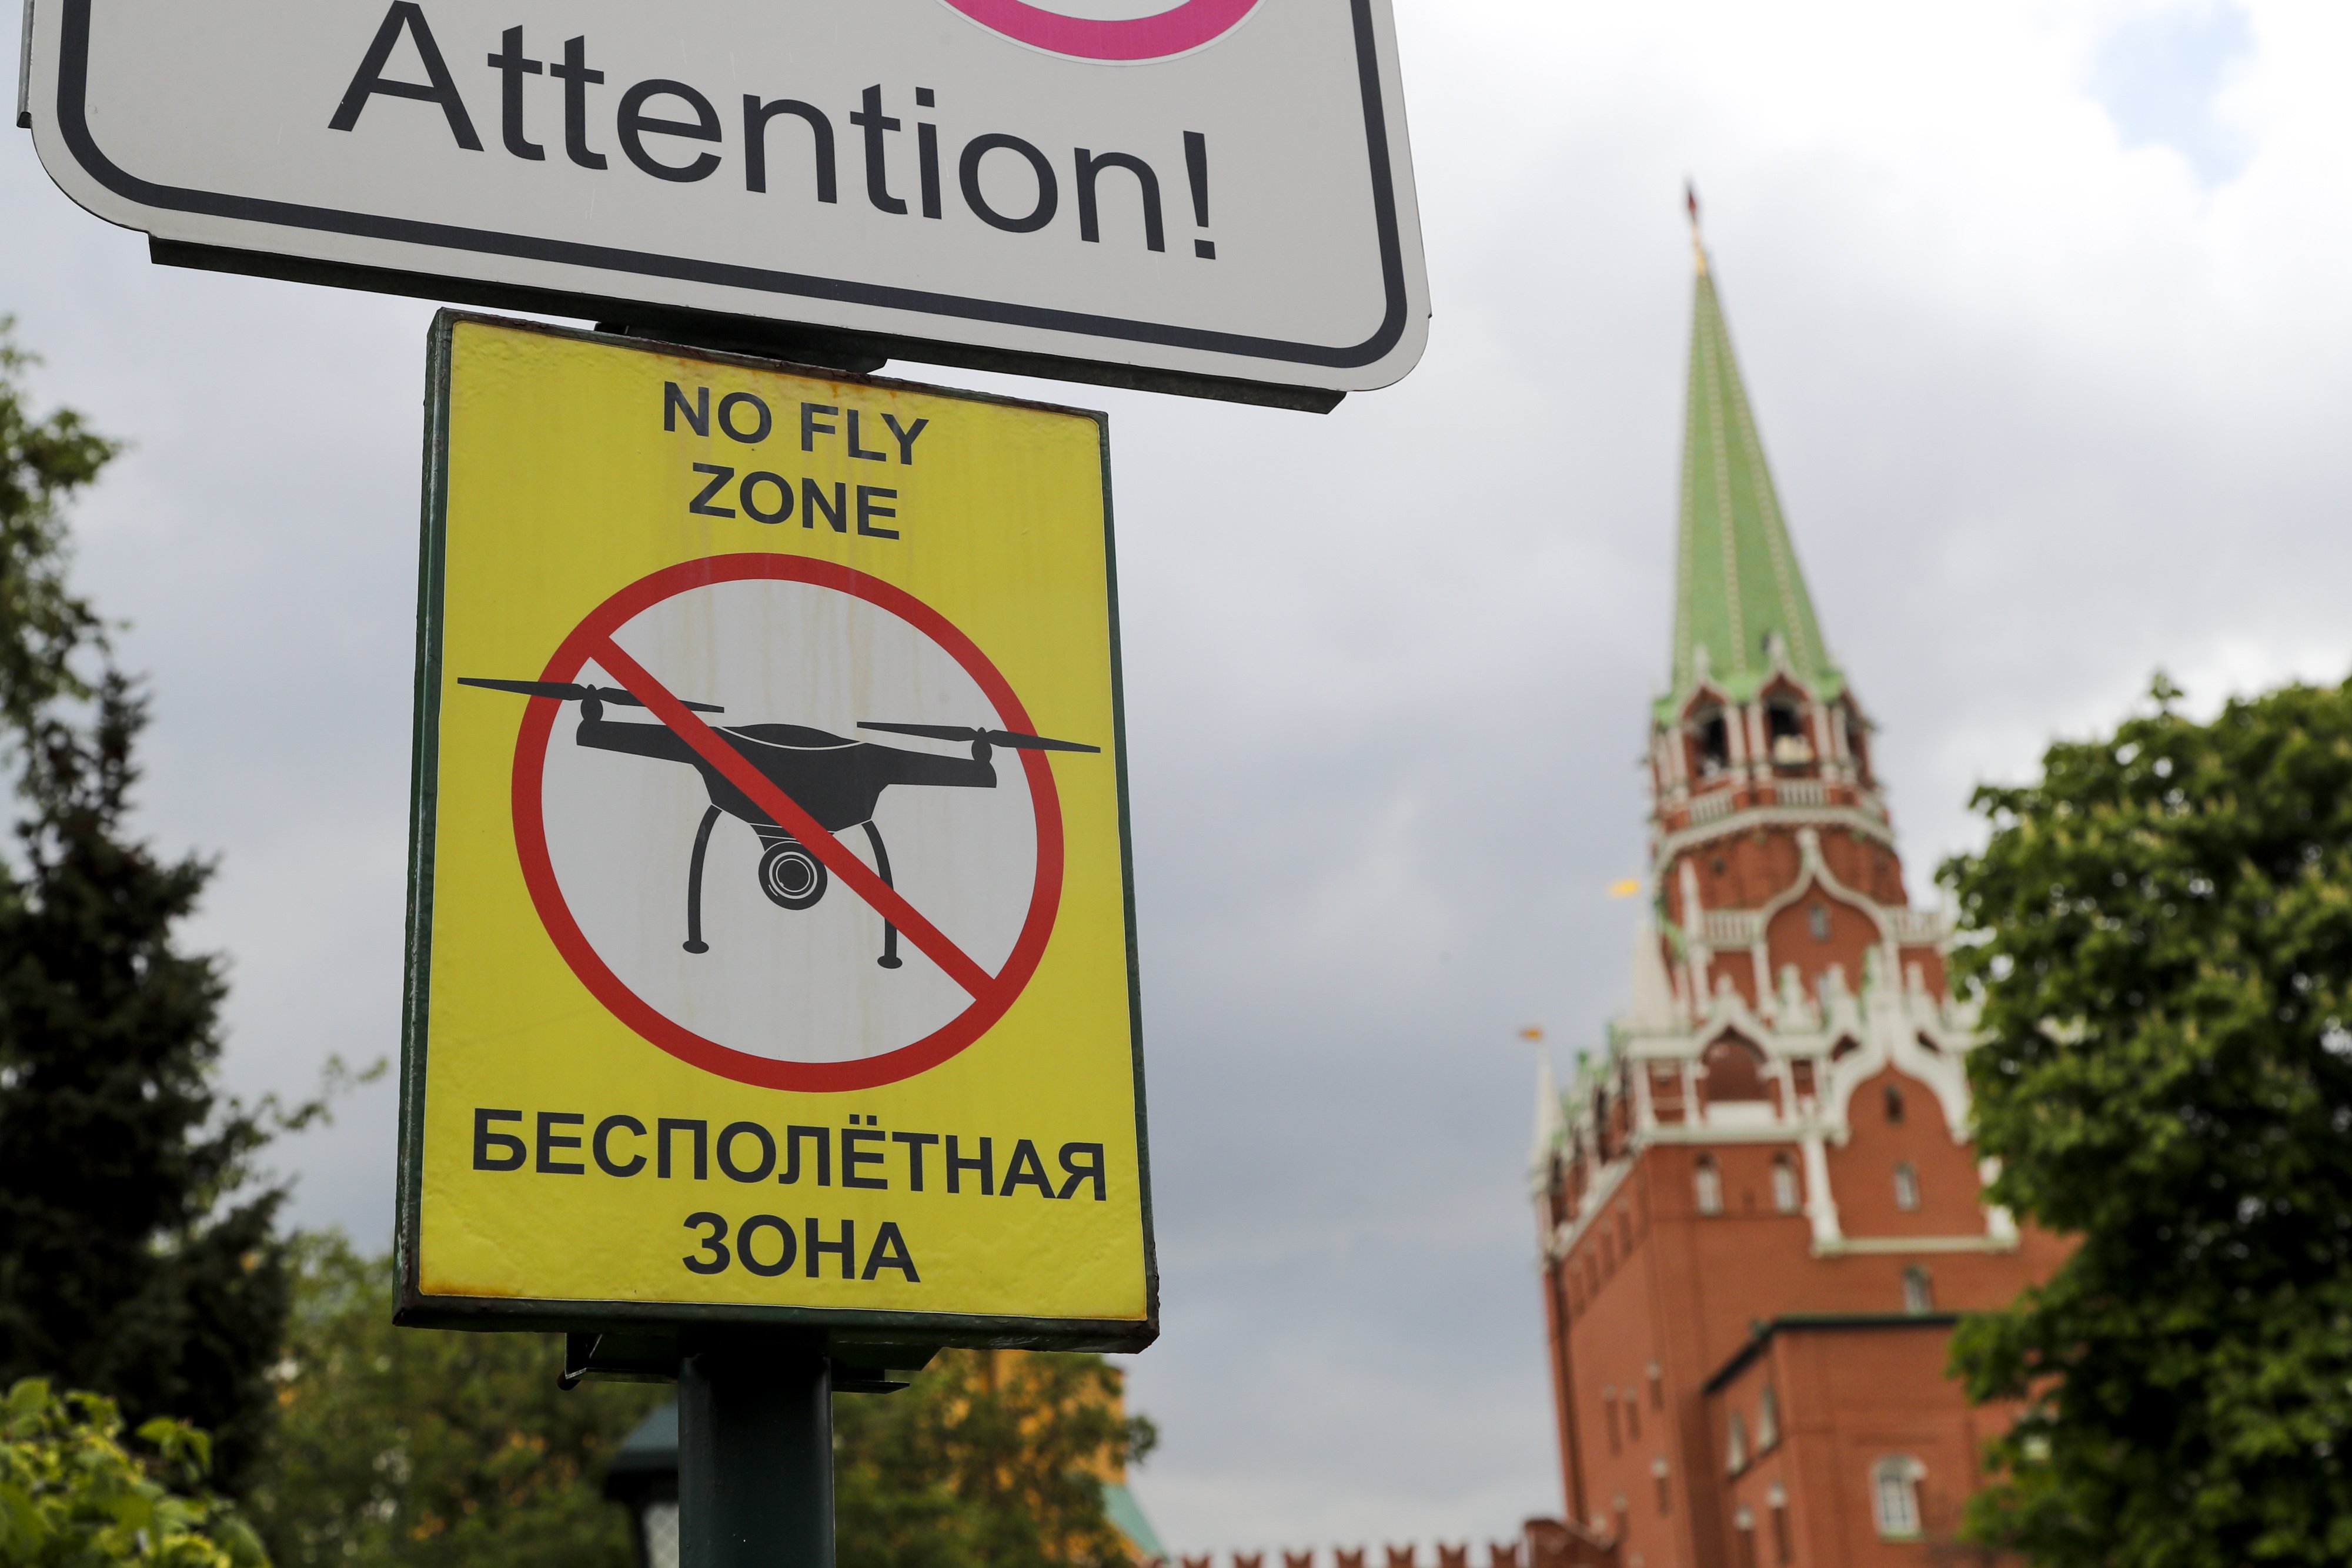 Moscú sufre un ataque con drones: edificios dañados y ningún muerto